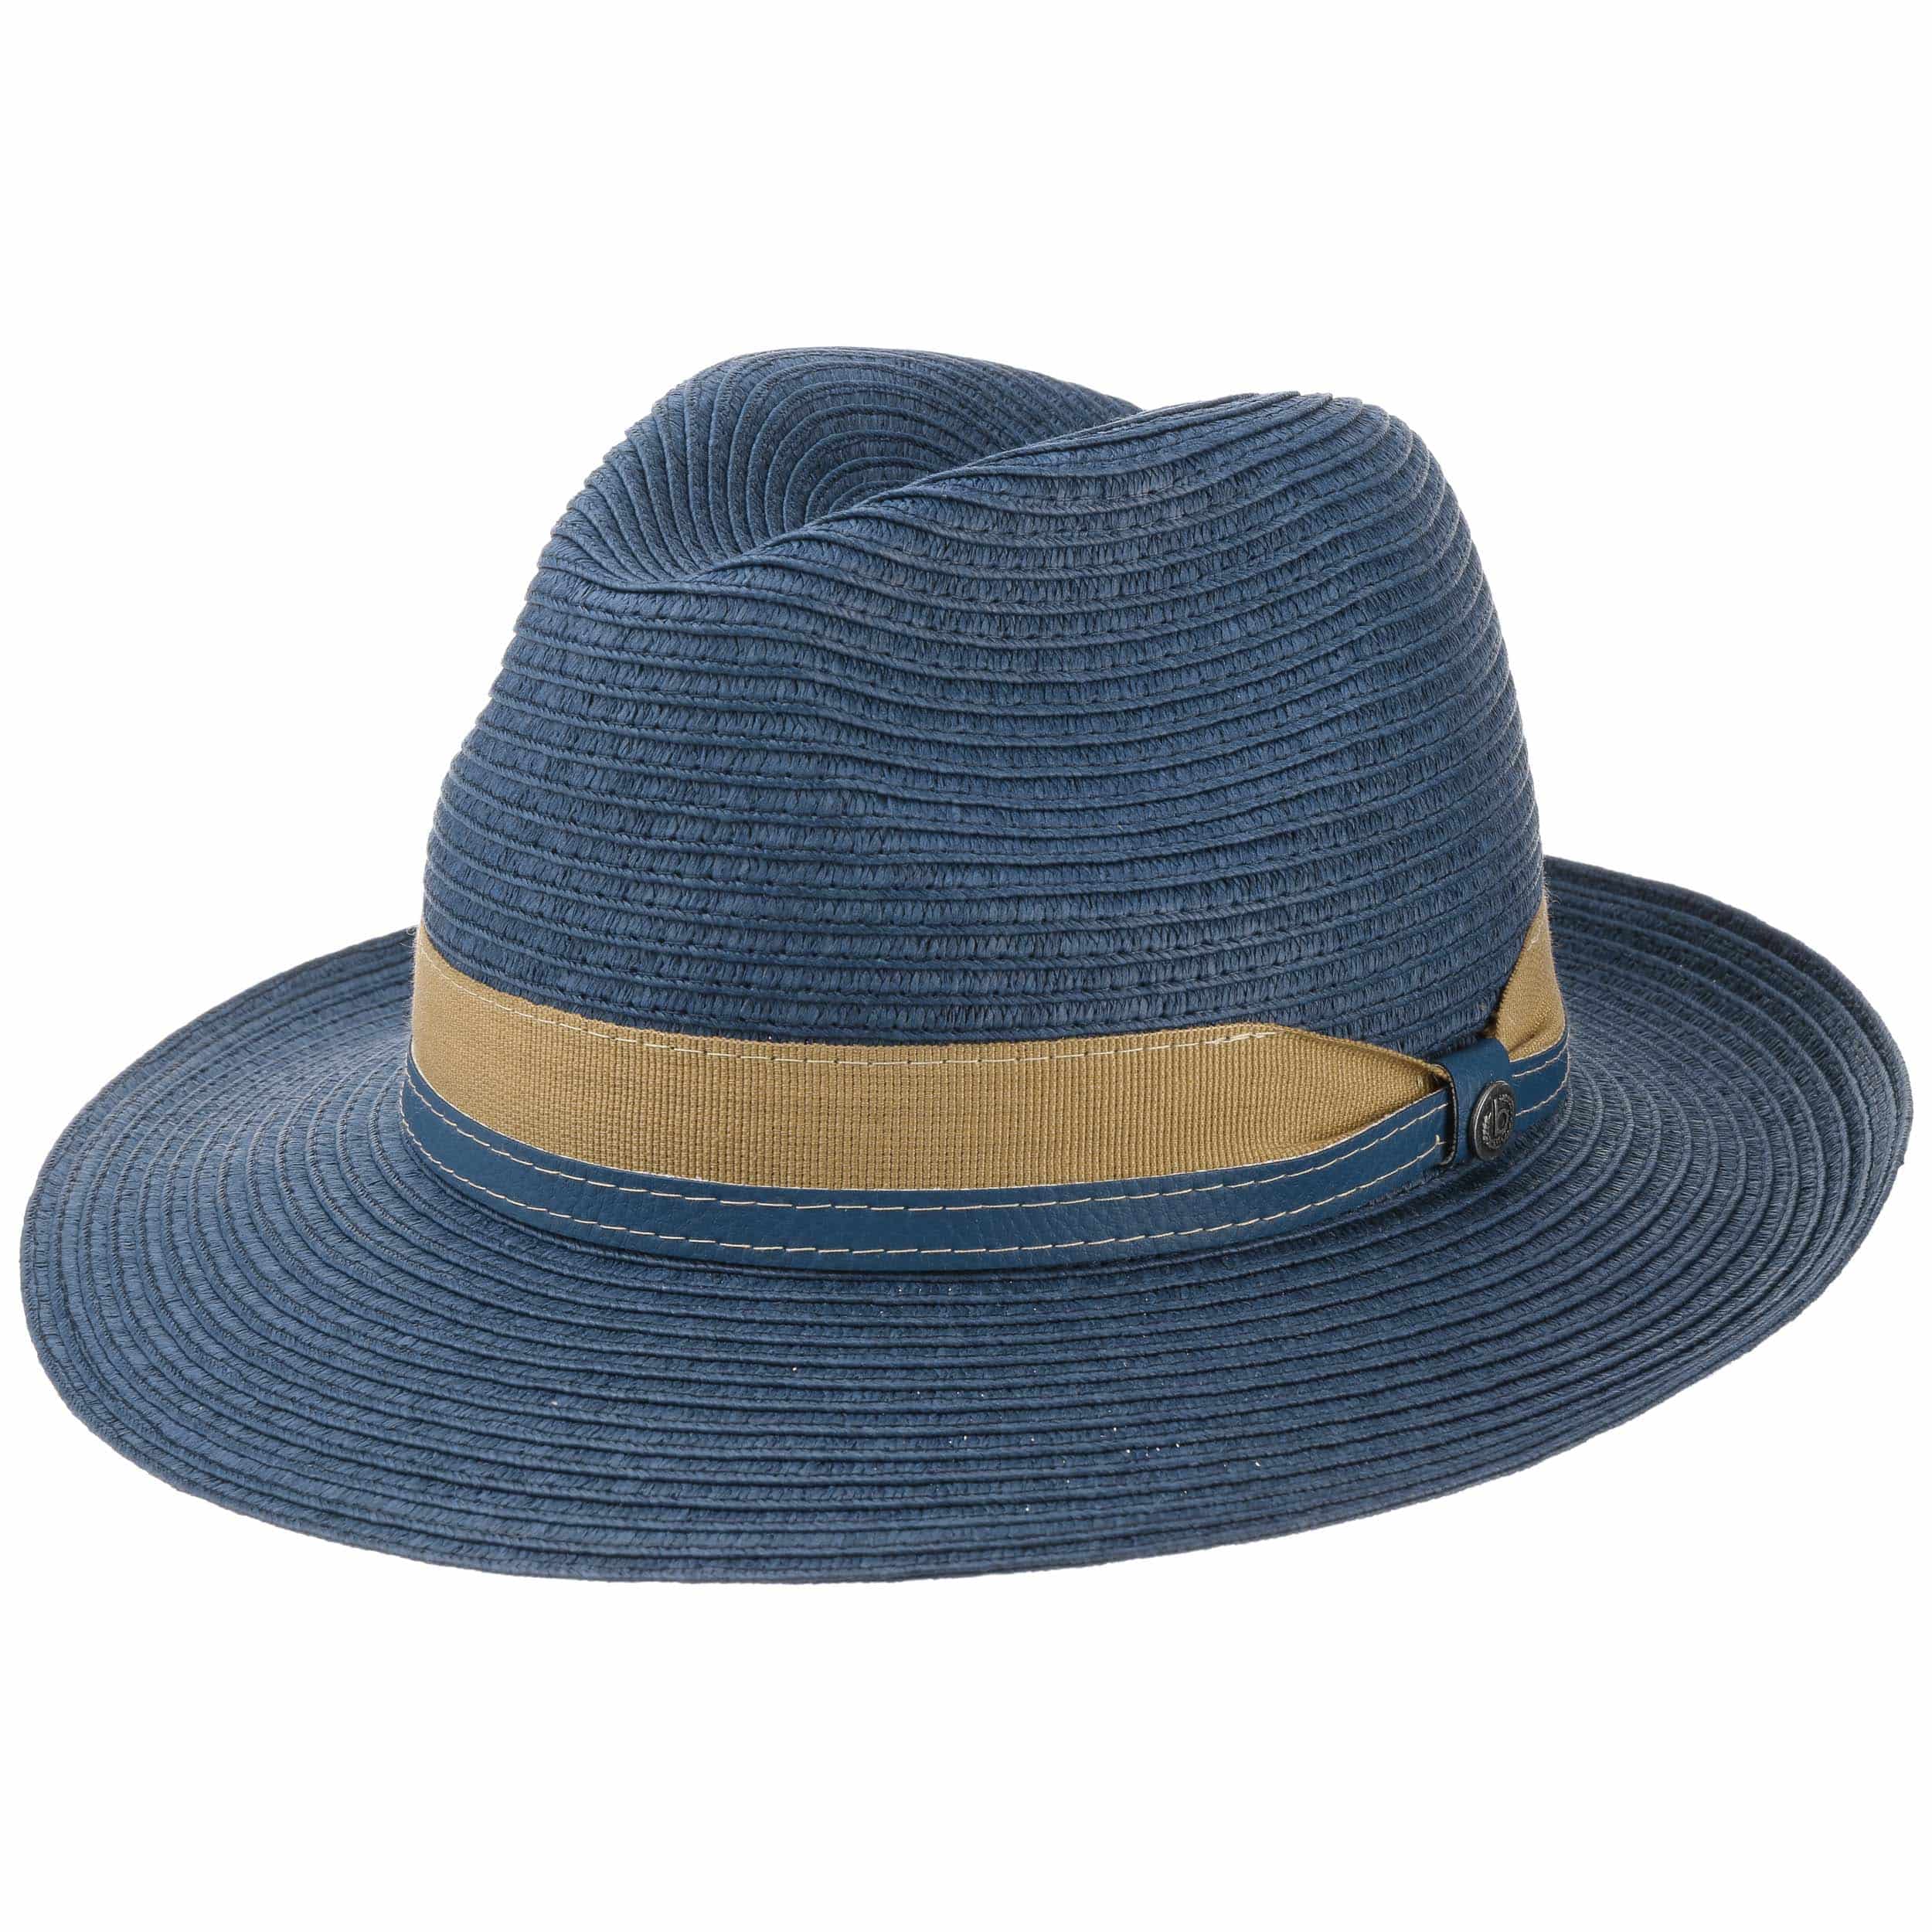 Mattis Bogart Straw Hat by bugatti - 32,95